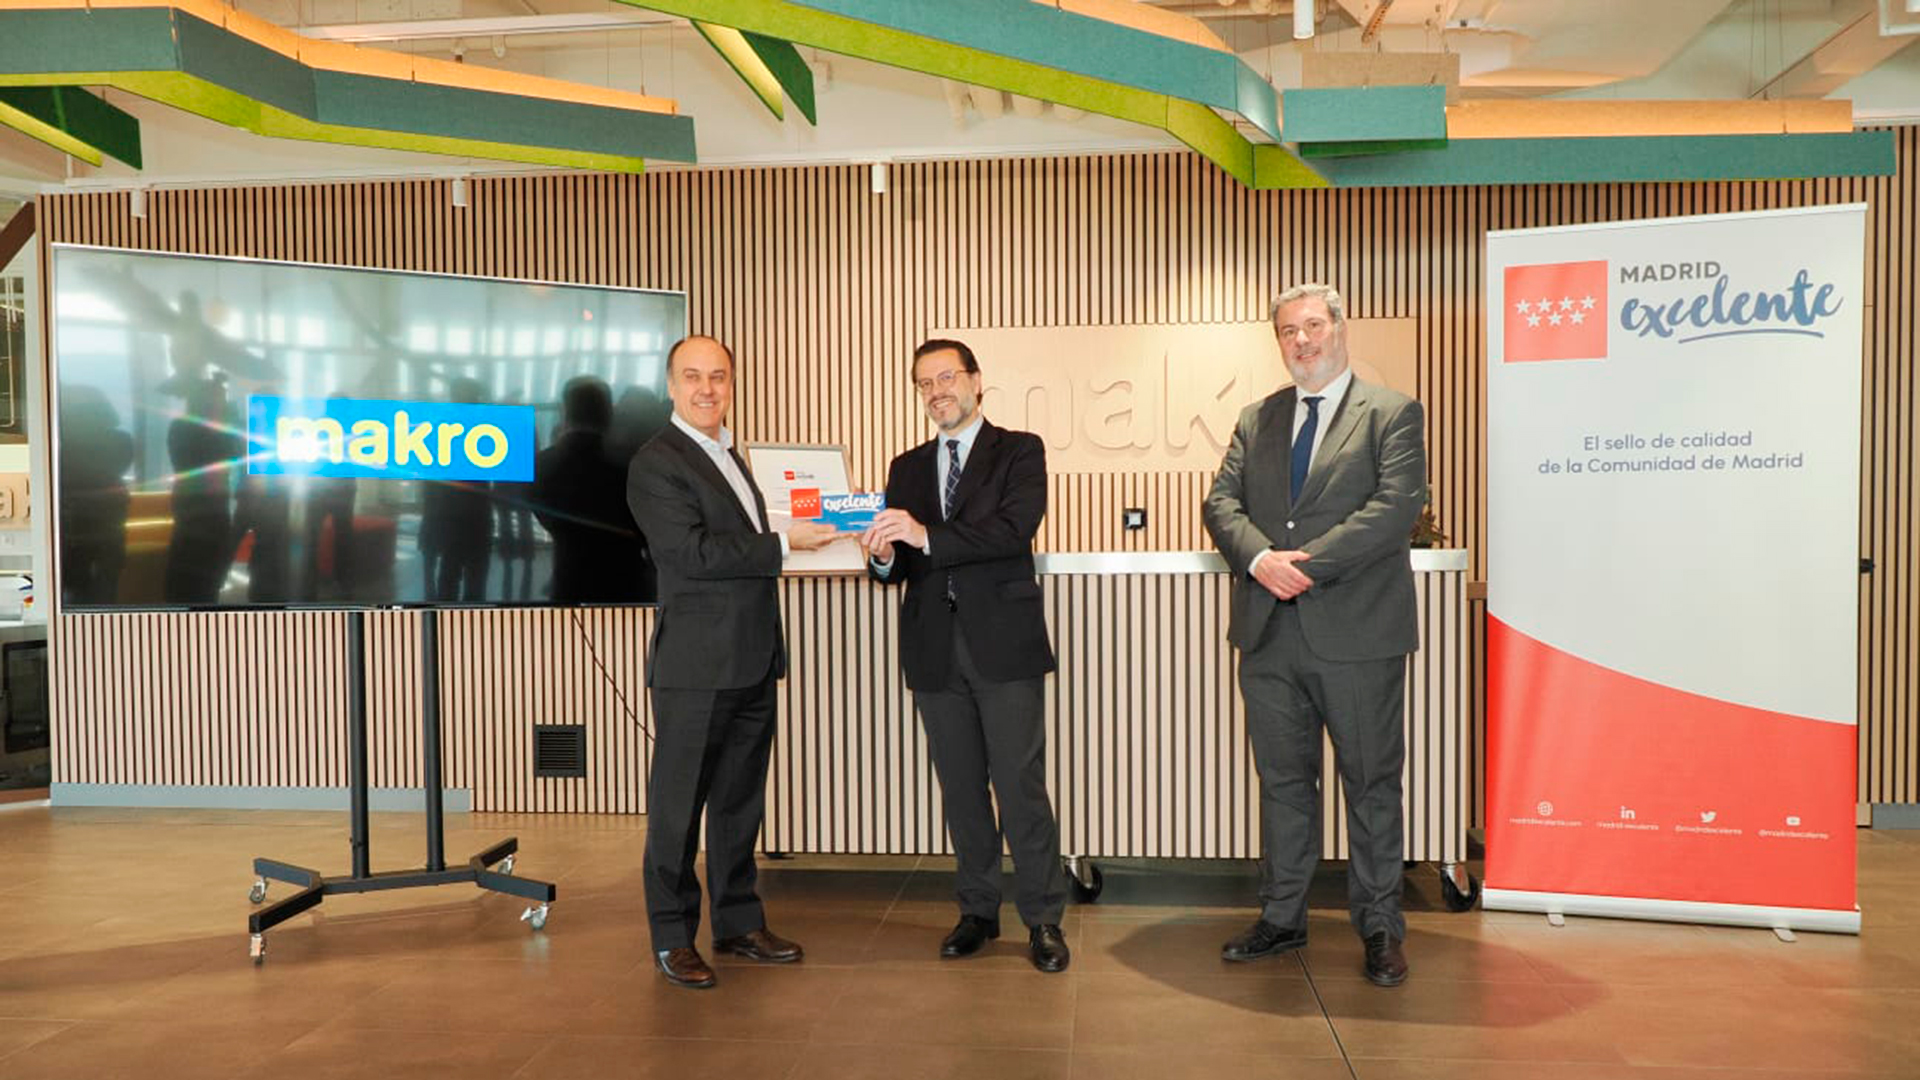 La Comunidad de Madrid avala el compromiso de Makro con la innovación y la sostenibilidad mediante su sello de calidad Madrid Excelente